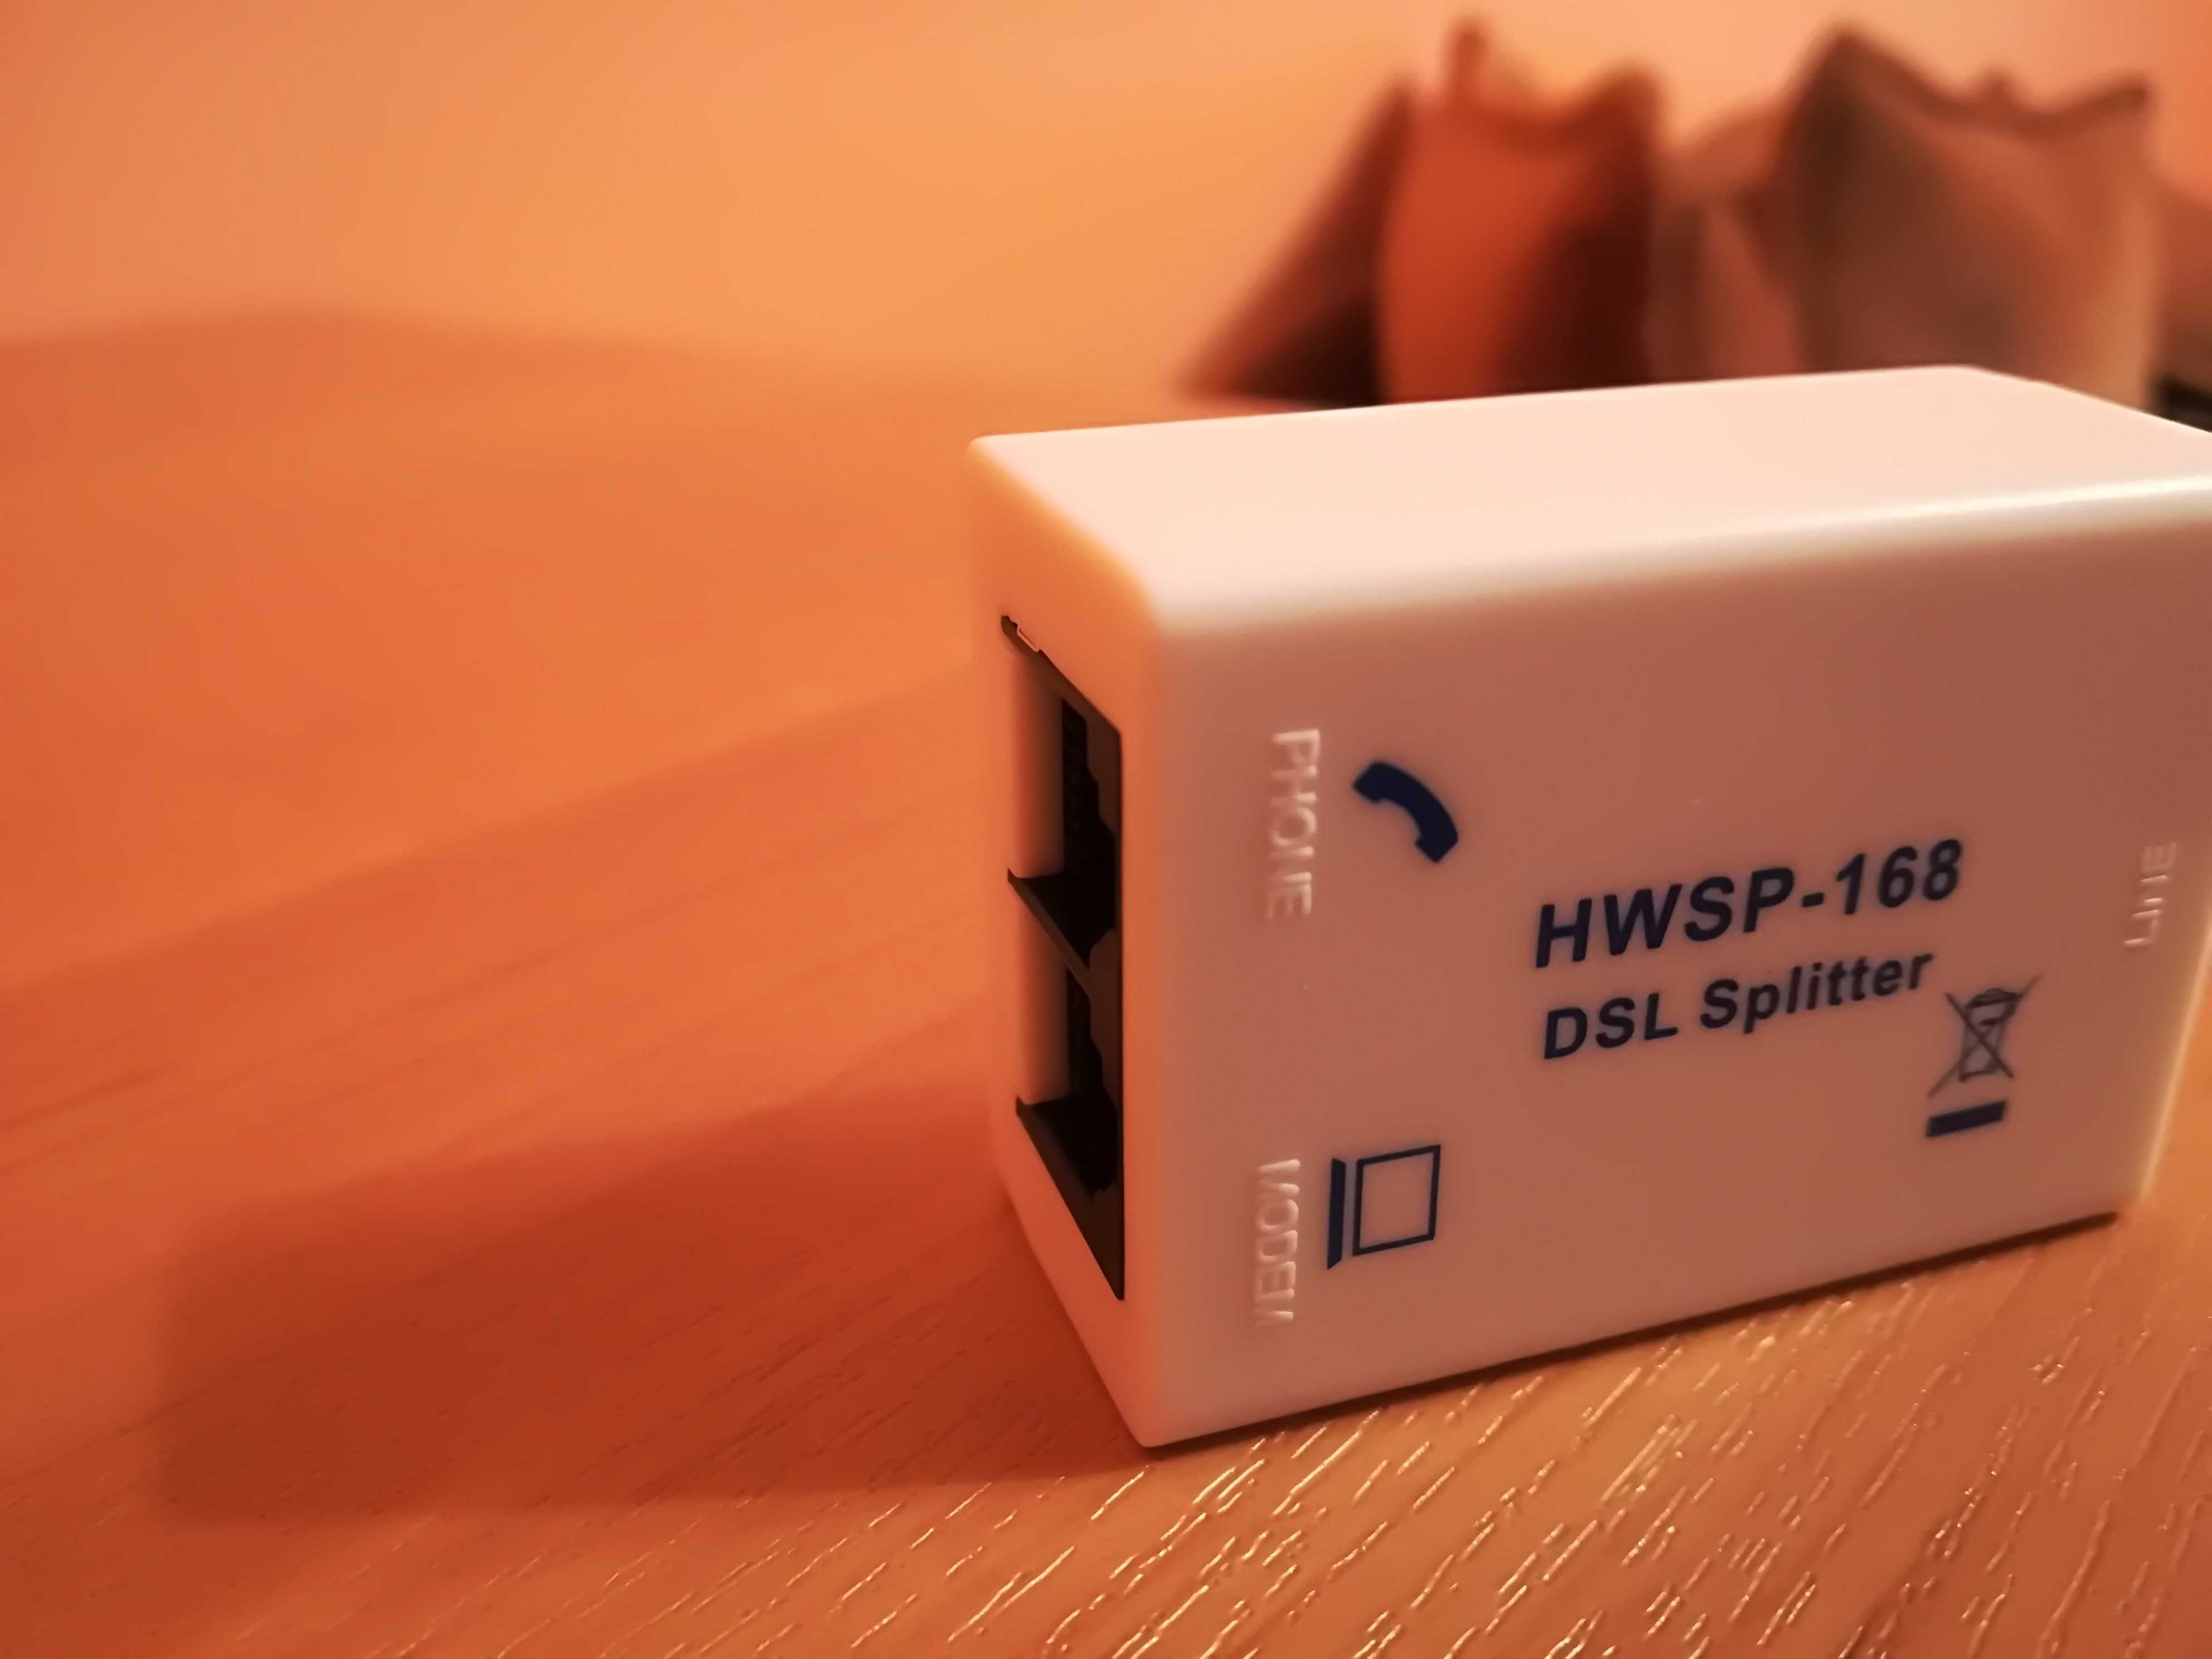 DSL Splitter HWSP-168